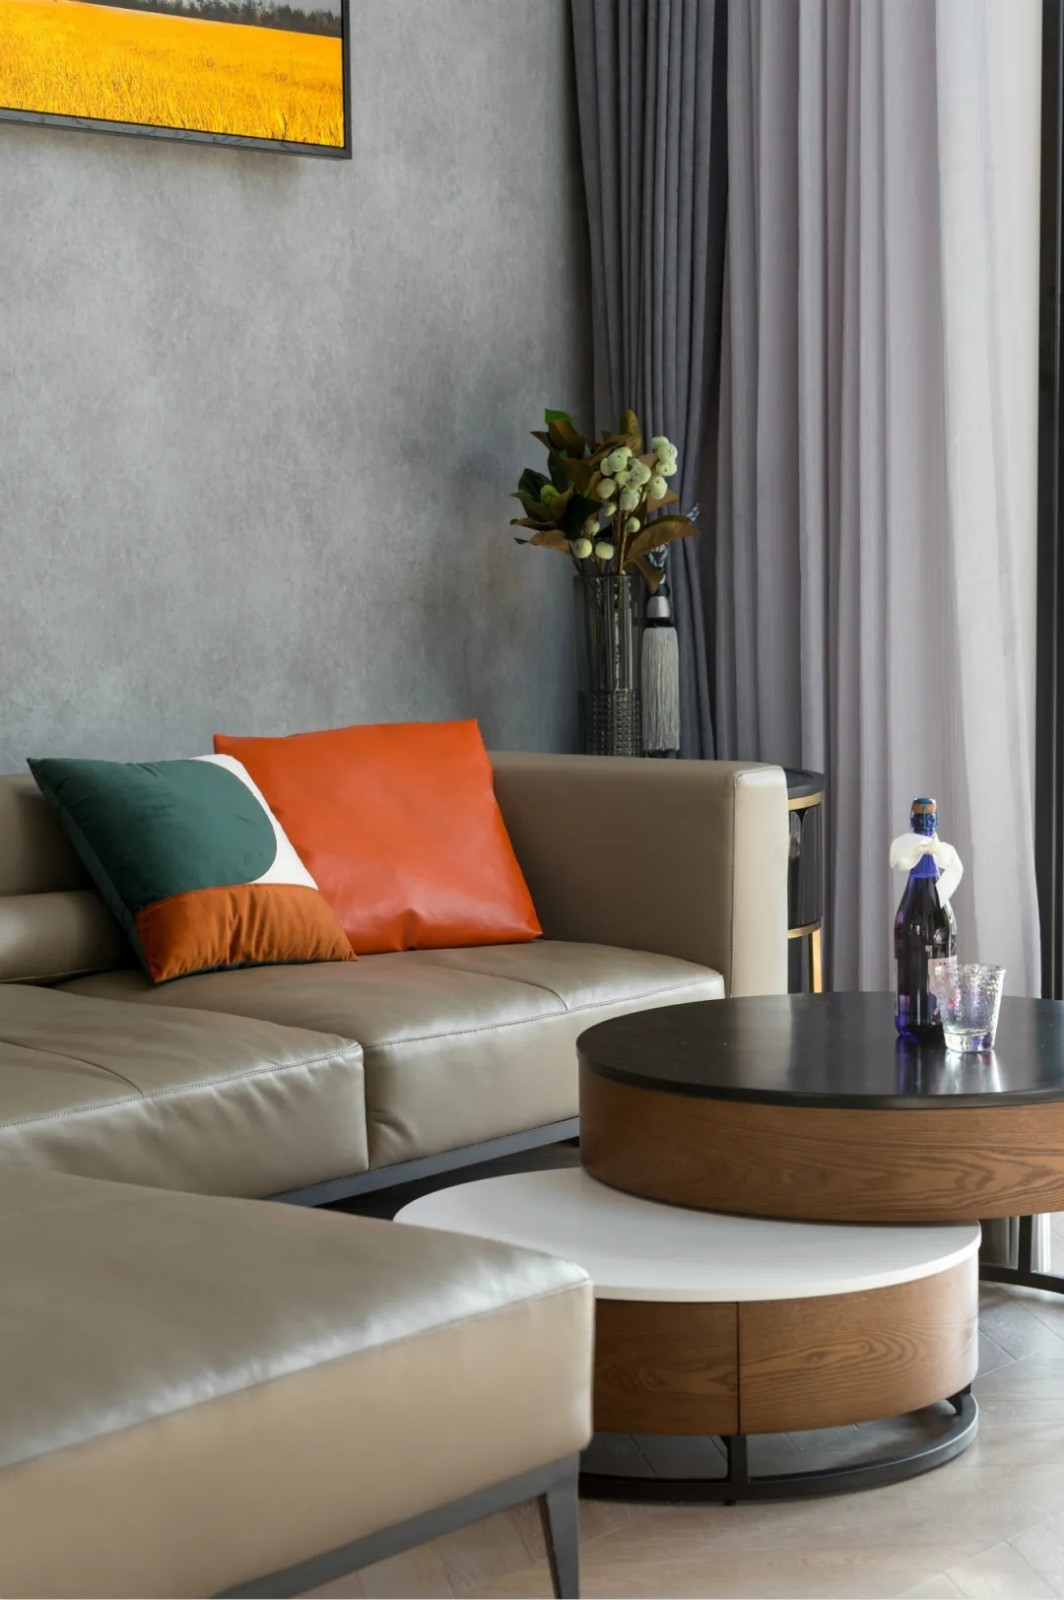 裝修案例現代風格復式裝修效果圖-客廳沙發